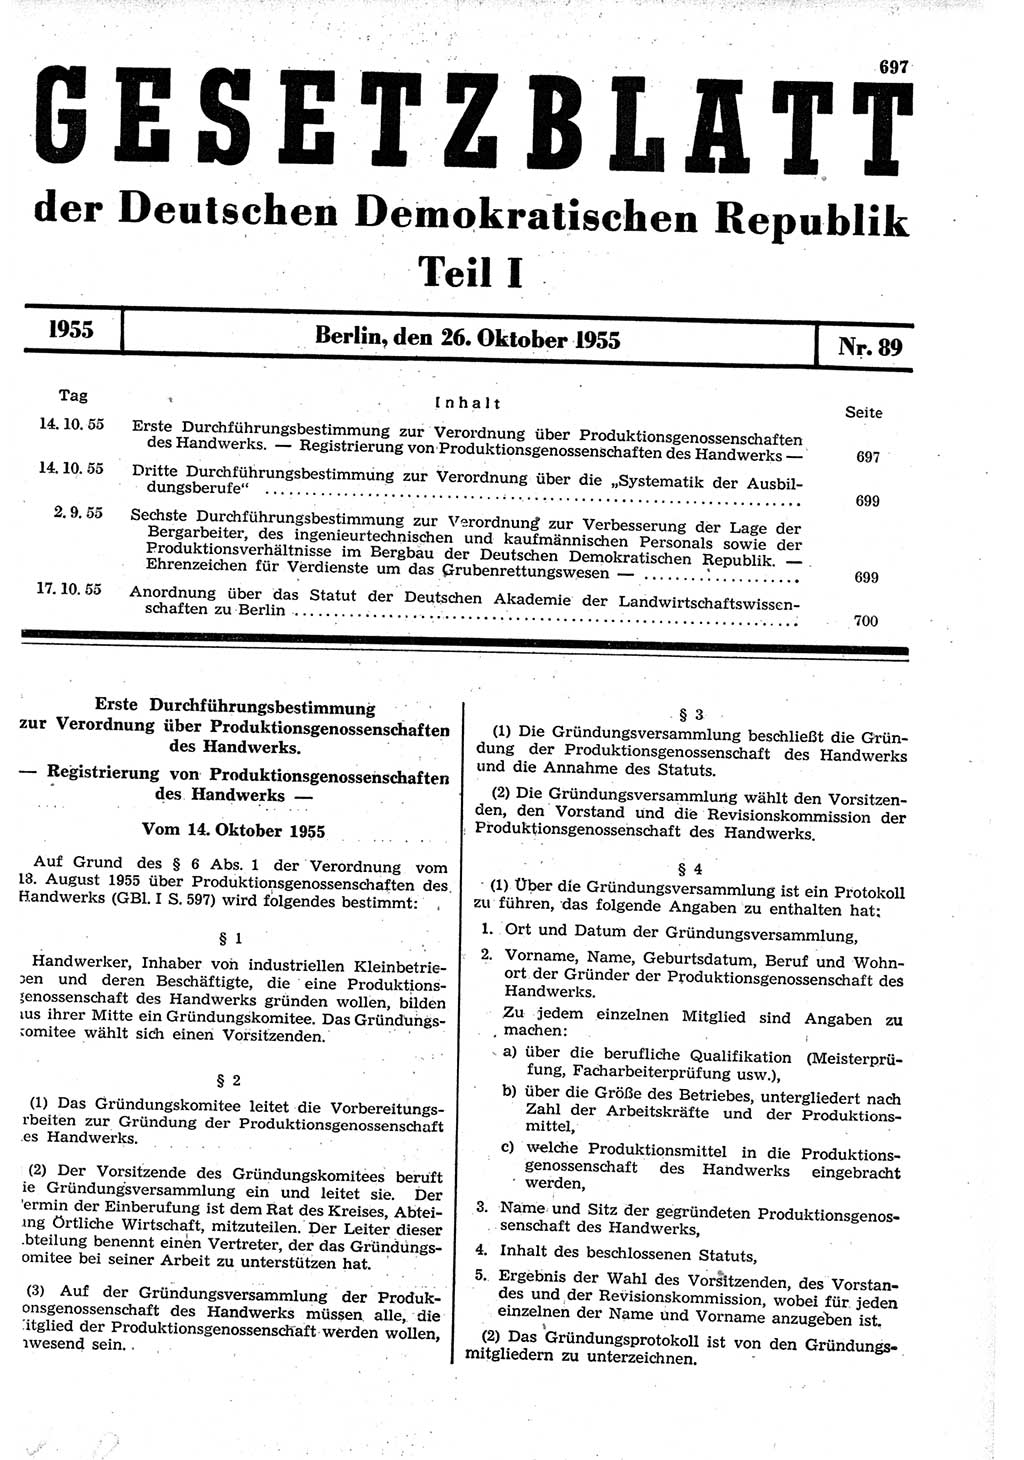 Gesetzblatt (GBl.) der Deutschen Demokratischen Republik (DDR) Teil Ⅰ 1955, Seite 697 (GBl. DDR Ⅰ 1955, S. 697)